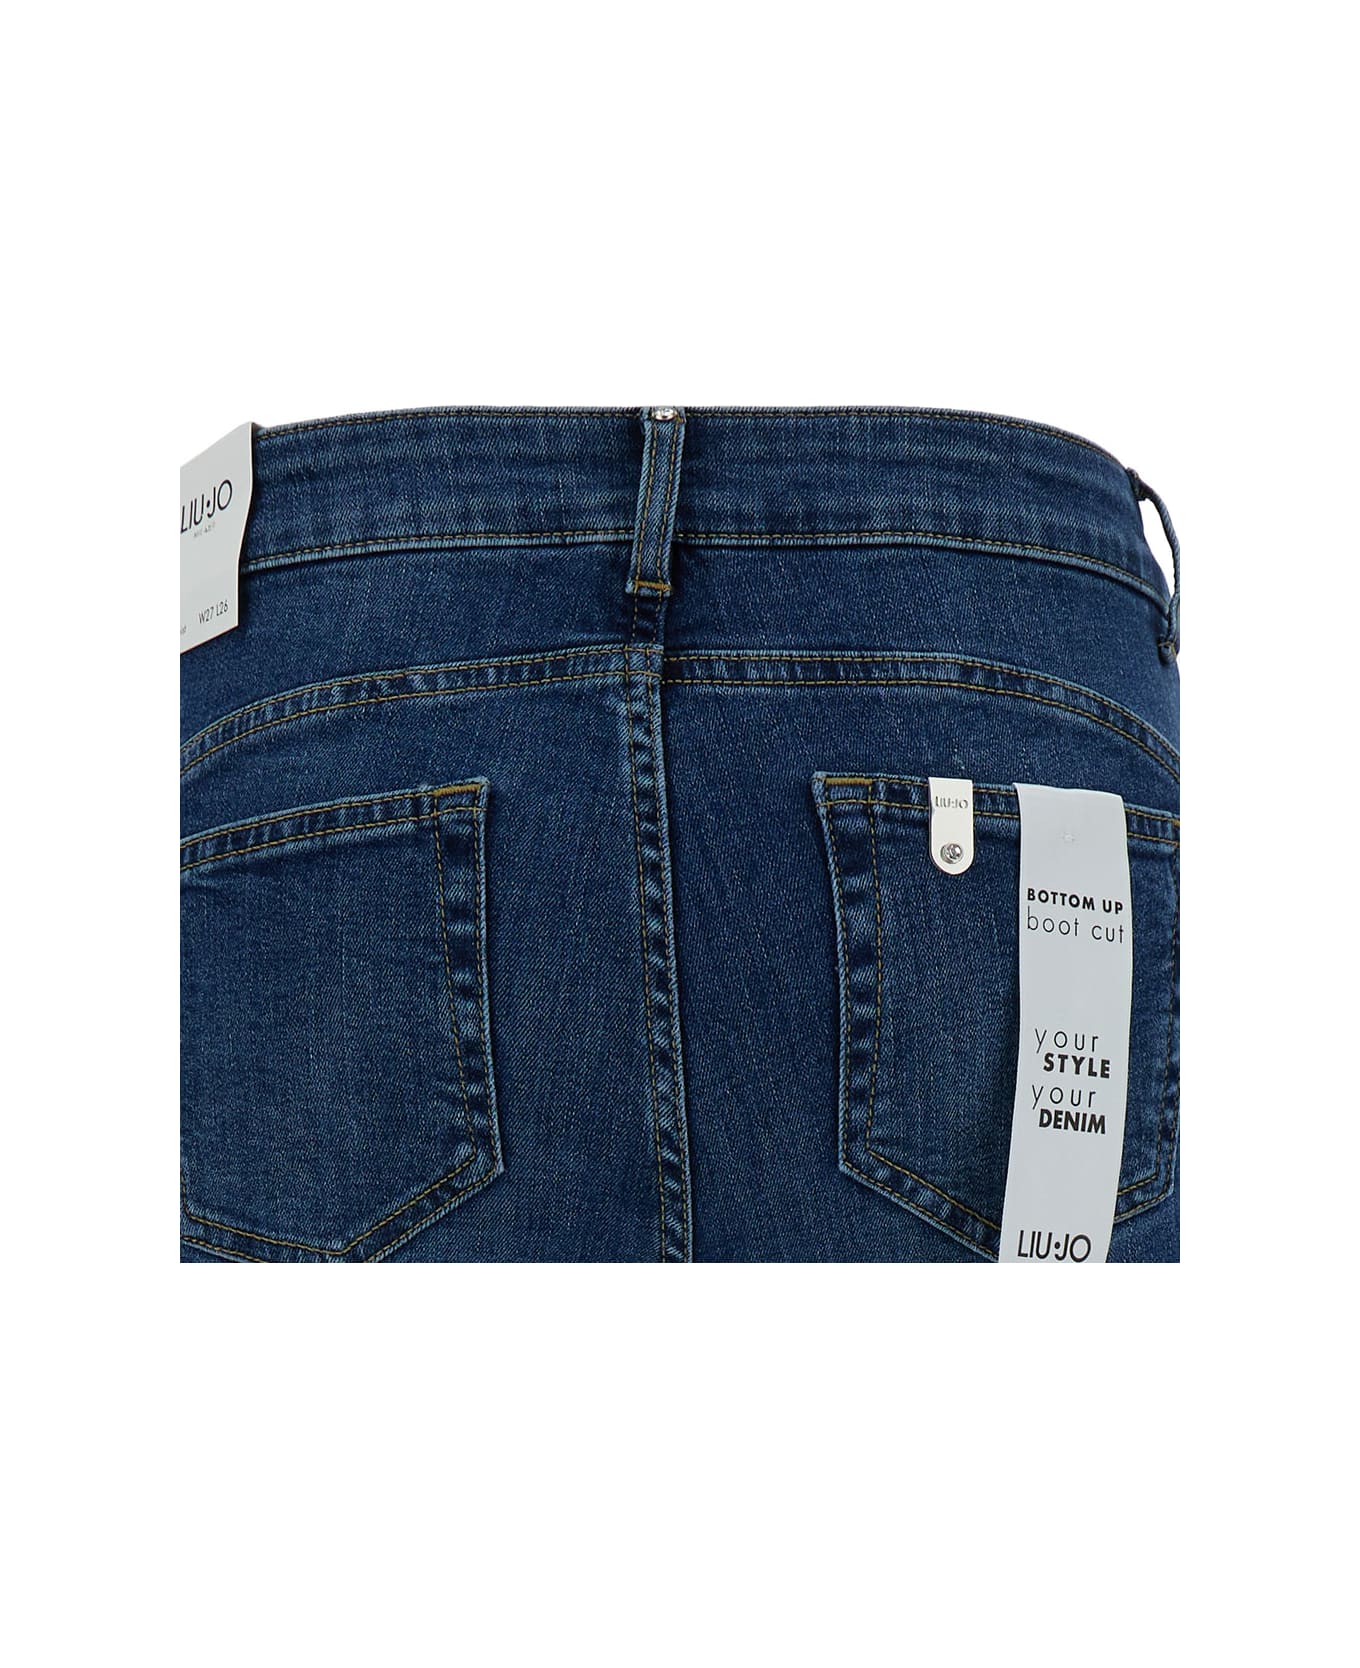 Liu-Jo Blue Slightly Flared Five Pocket Jeans In Cotton Denim Woman - Blu デニム